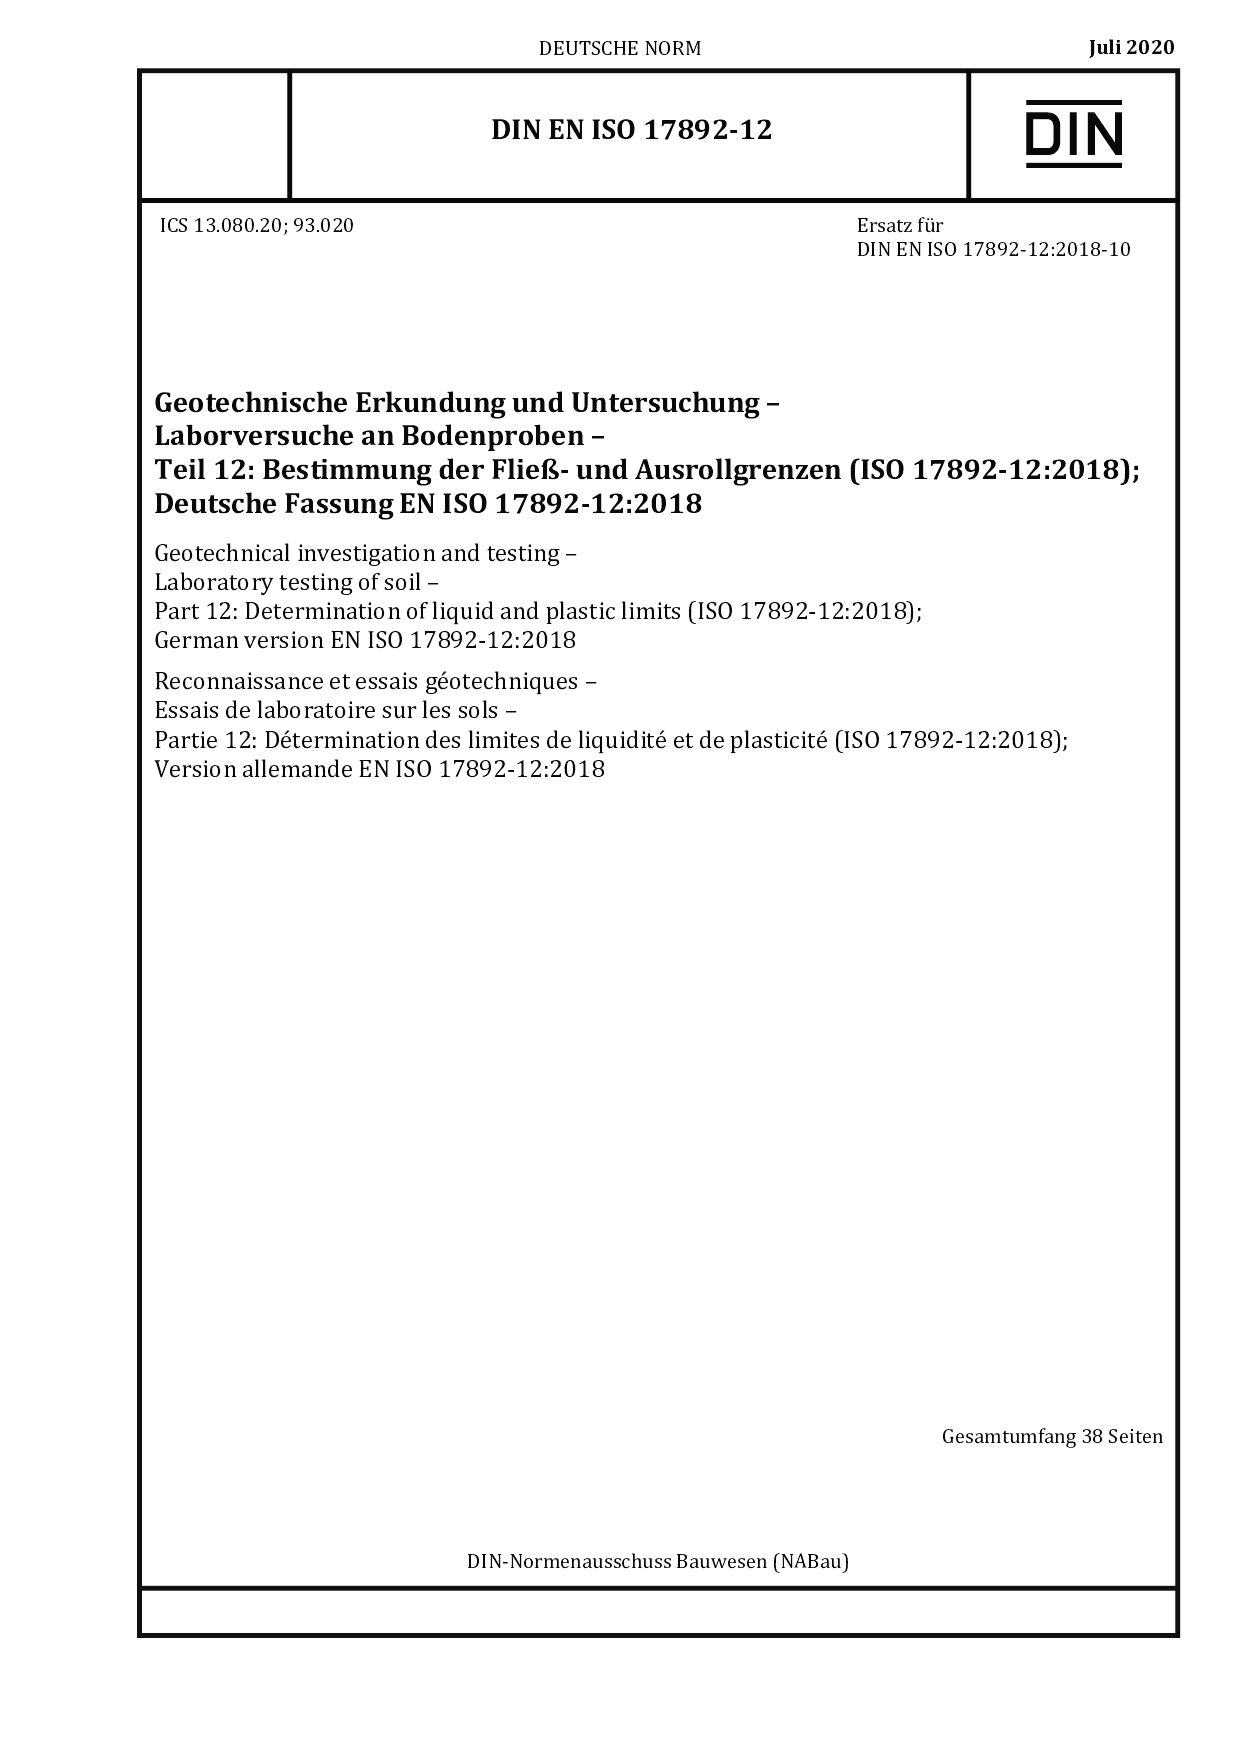 DIN EN ISO 17892-12:2020封面图